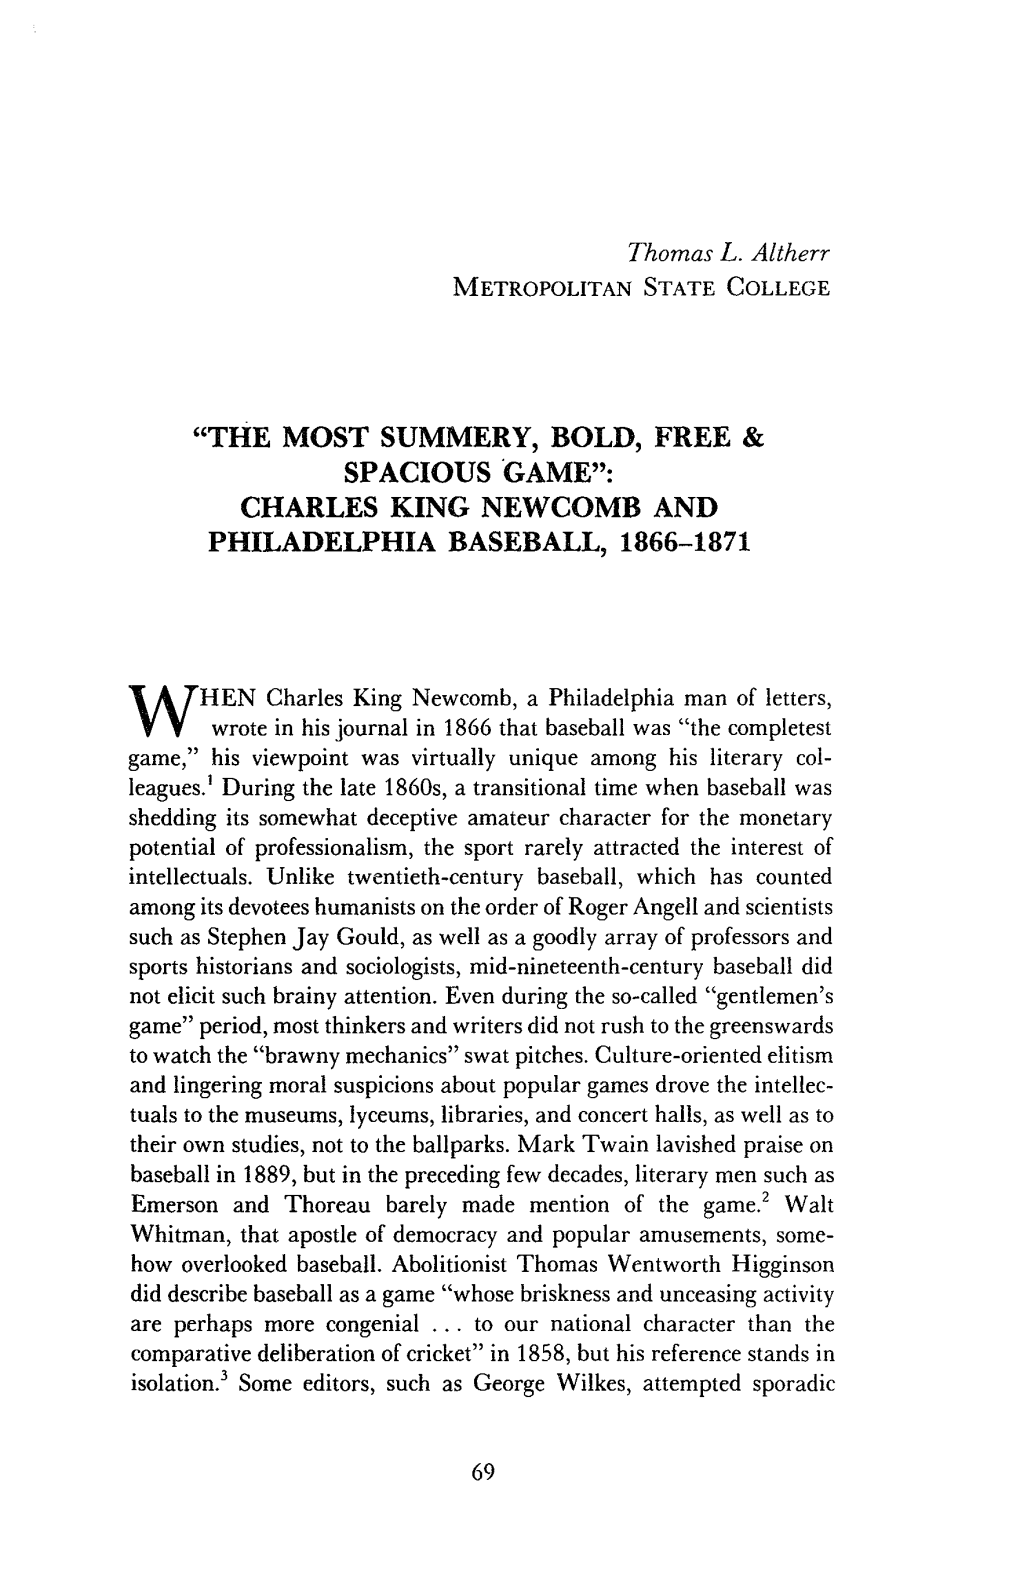 Spacious Game": Charles King Newcomb and Philadelphia Baseball, 1866-1871